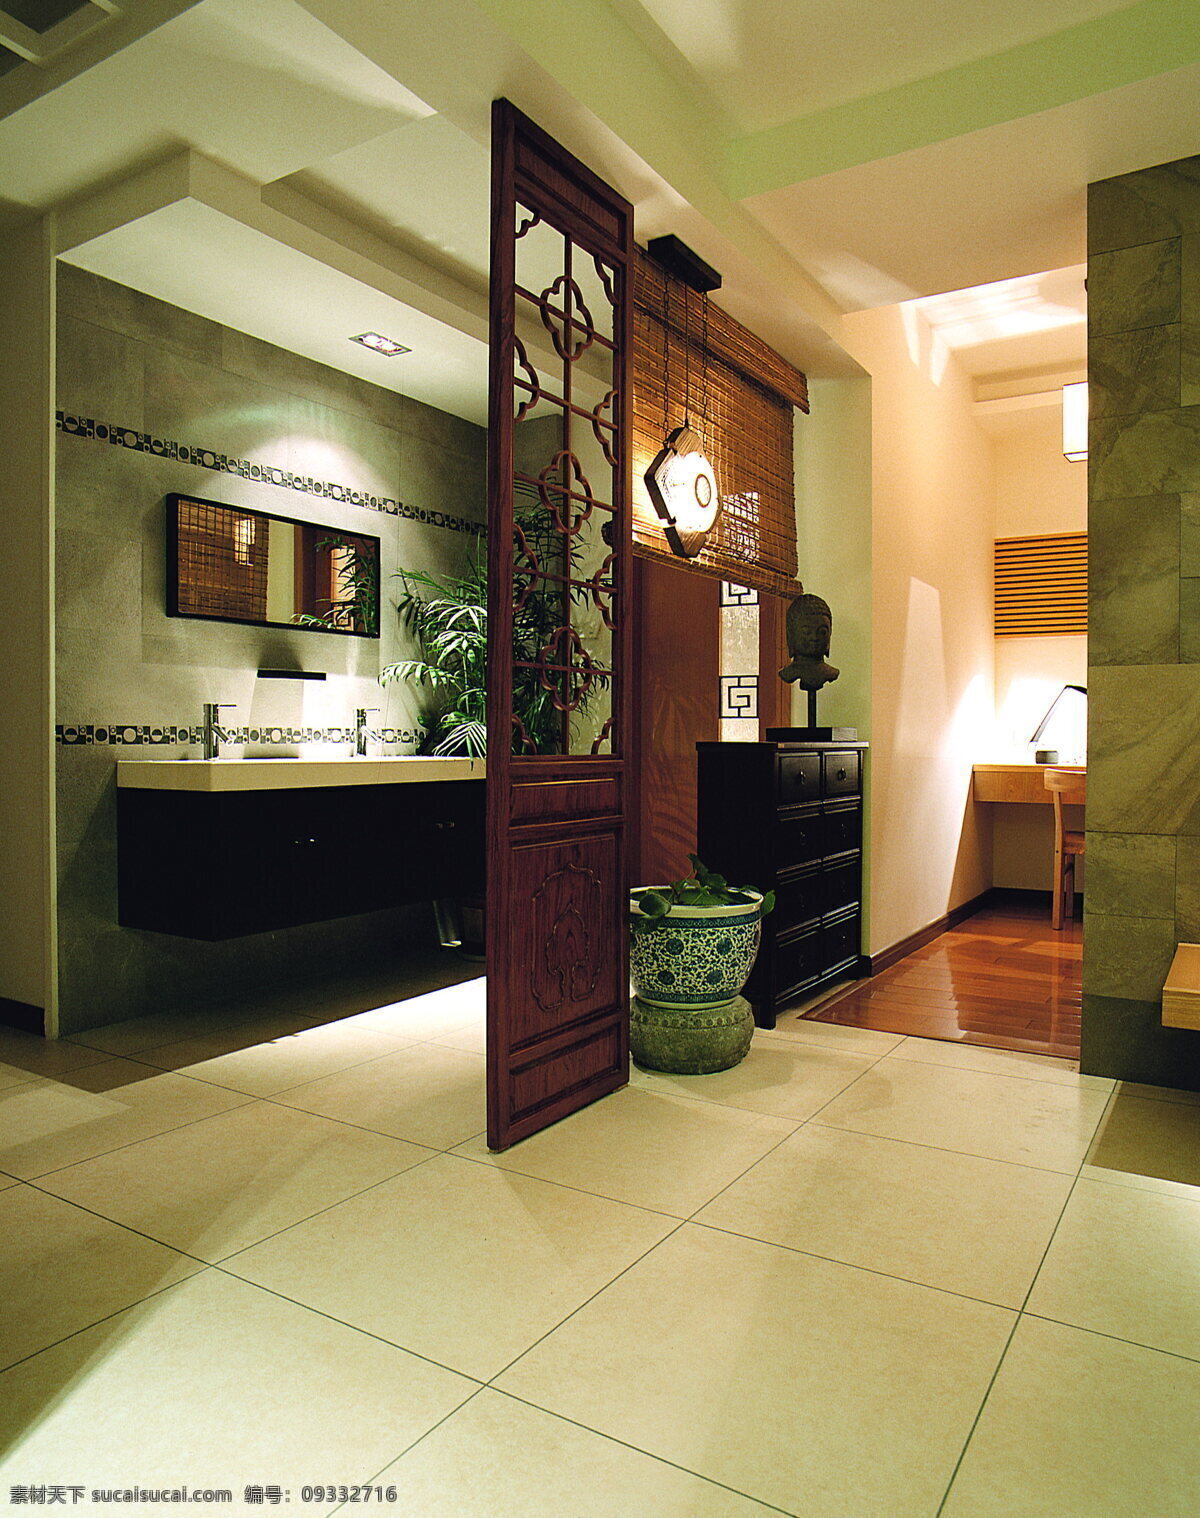 洗手间 效果图 b 室内设计 现代简约 室内 黄色